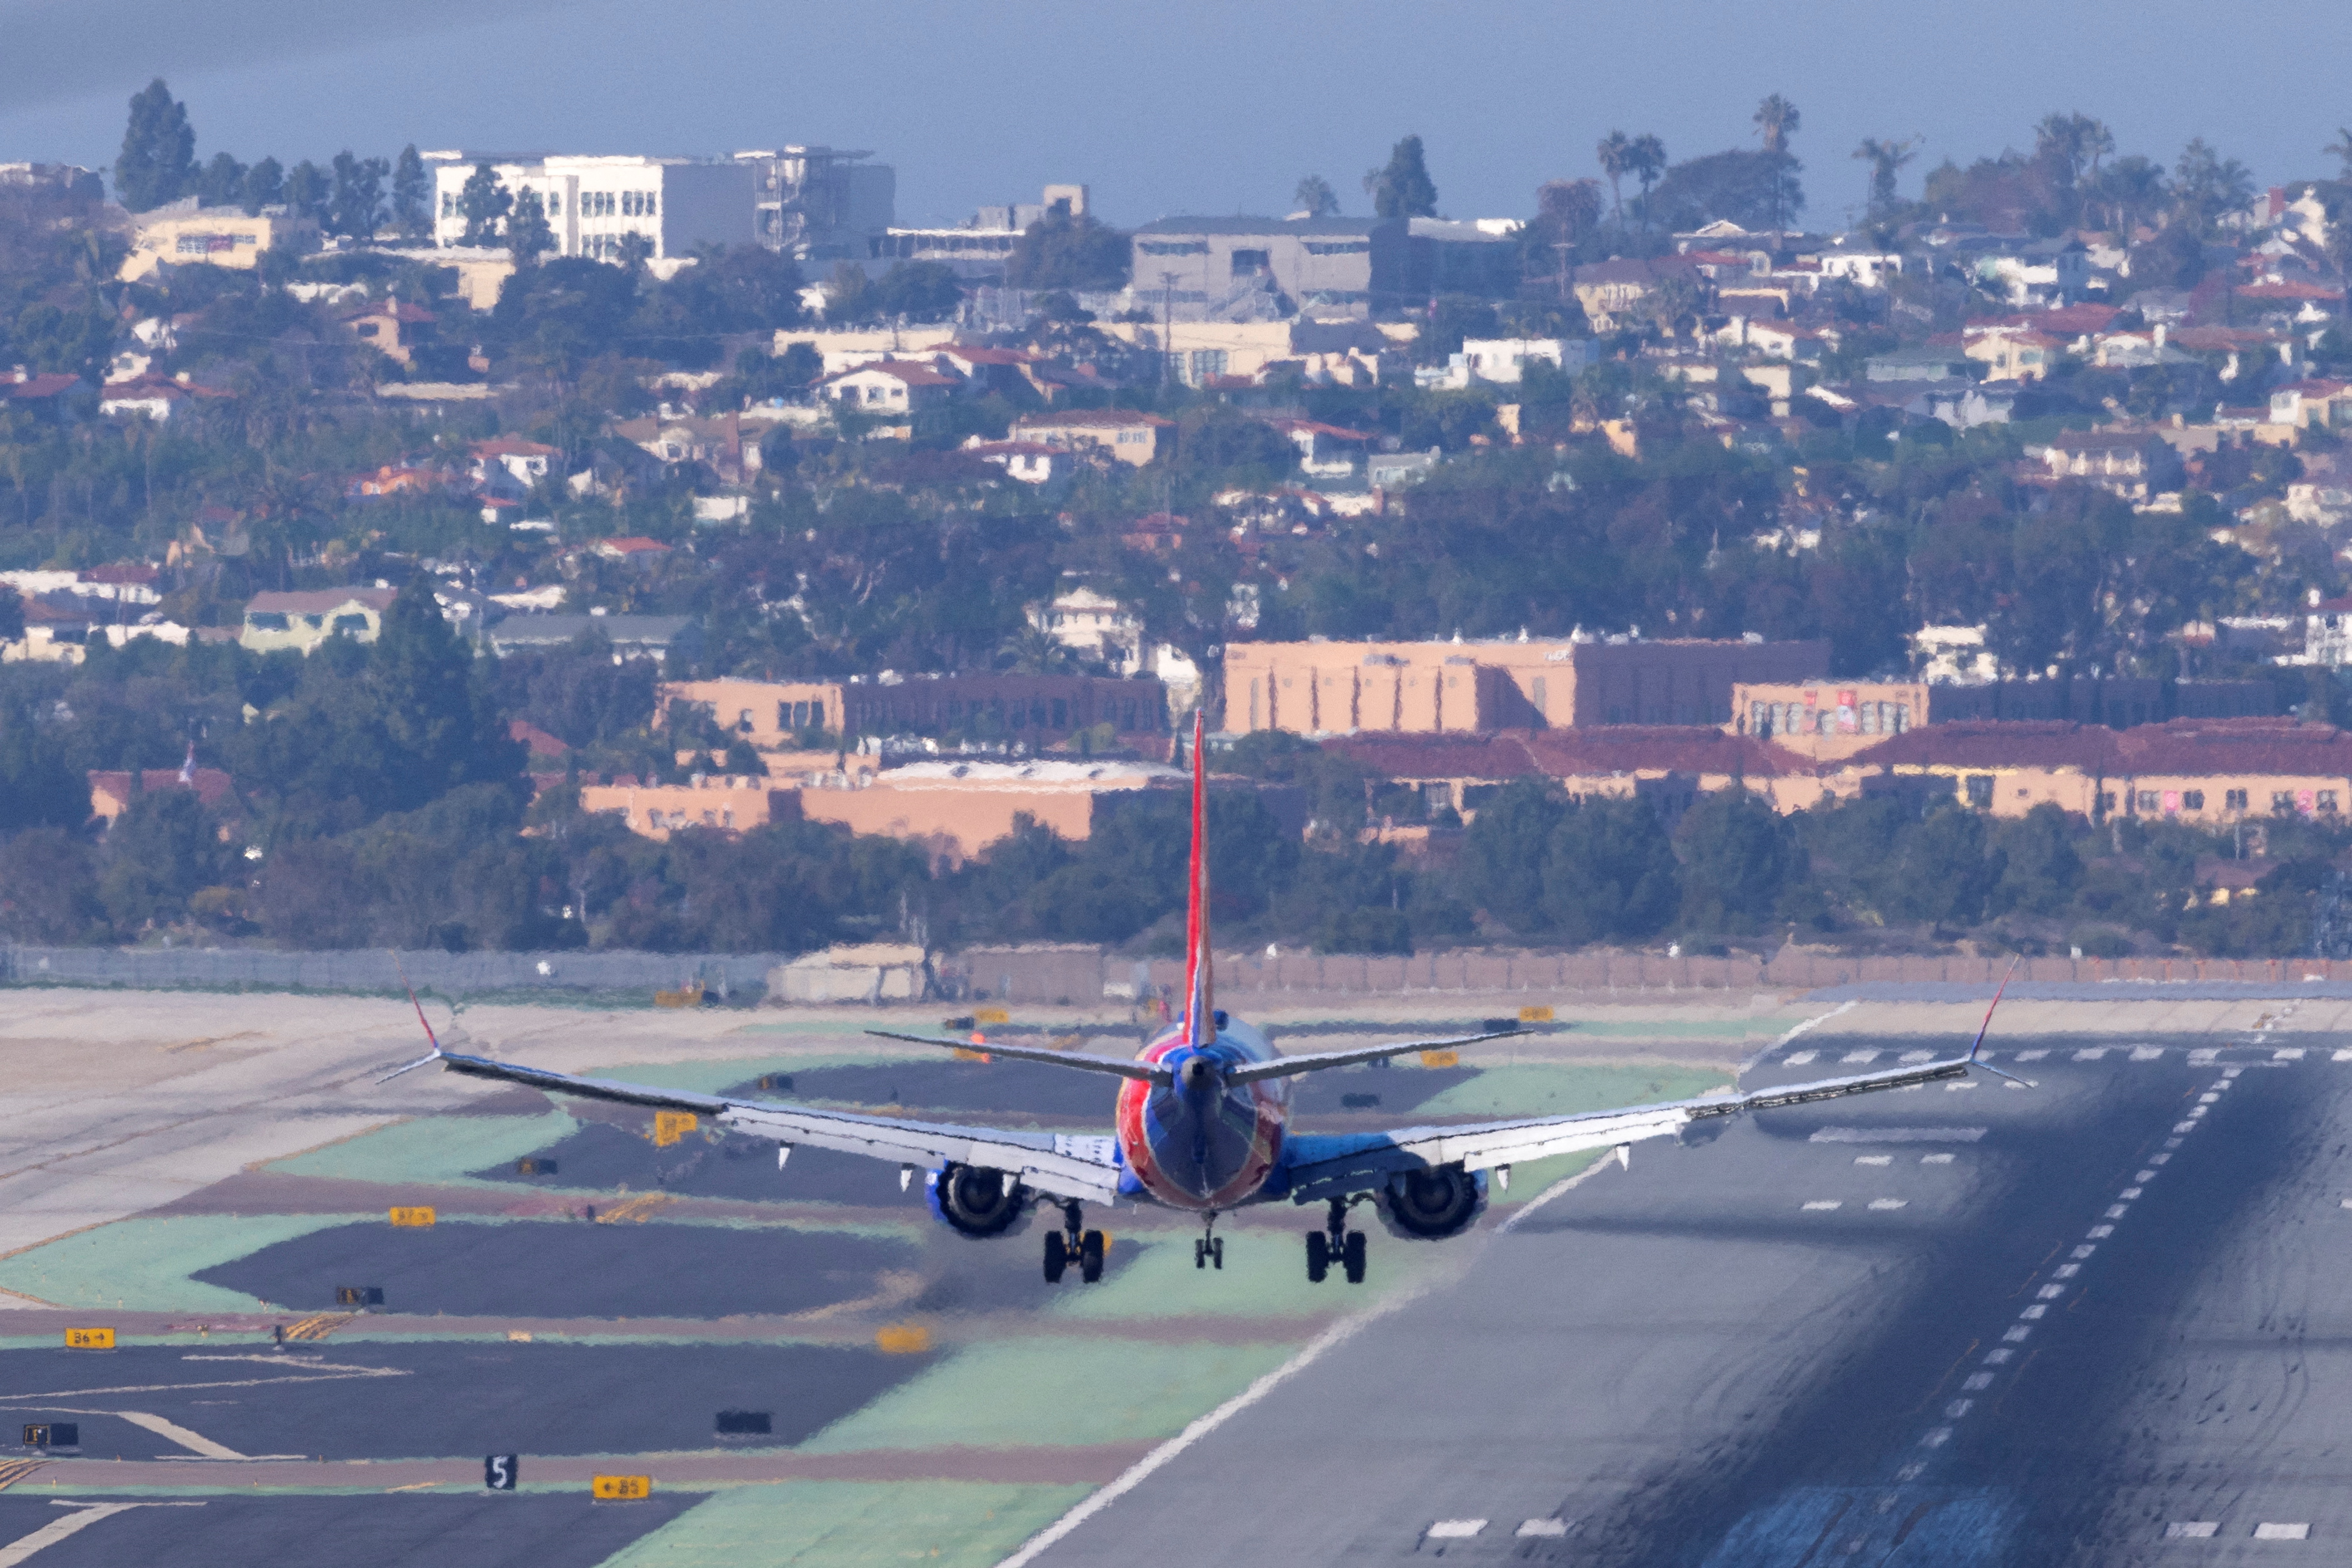 San Diego, USA, USA Il 6 gennaio 2022, le società di telecomunicazioni, le compagnie aeree e la FAA statunitensi hanno continuato a discutere del potenziale impatto dei servizi wireless 5G sull'elettronica dell'aviazione a San Diego, in California, quando il volo Southwest Airlines è atterrato all'aeroporto internazionale di San Diego. Avvicinandosi.  REUTERS/Mike Blake